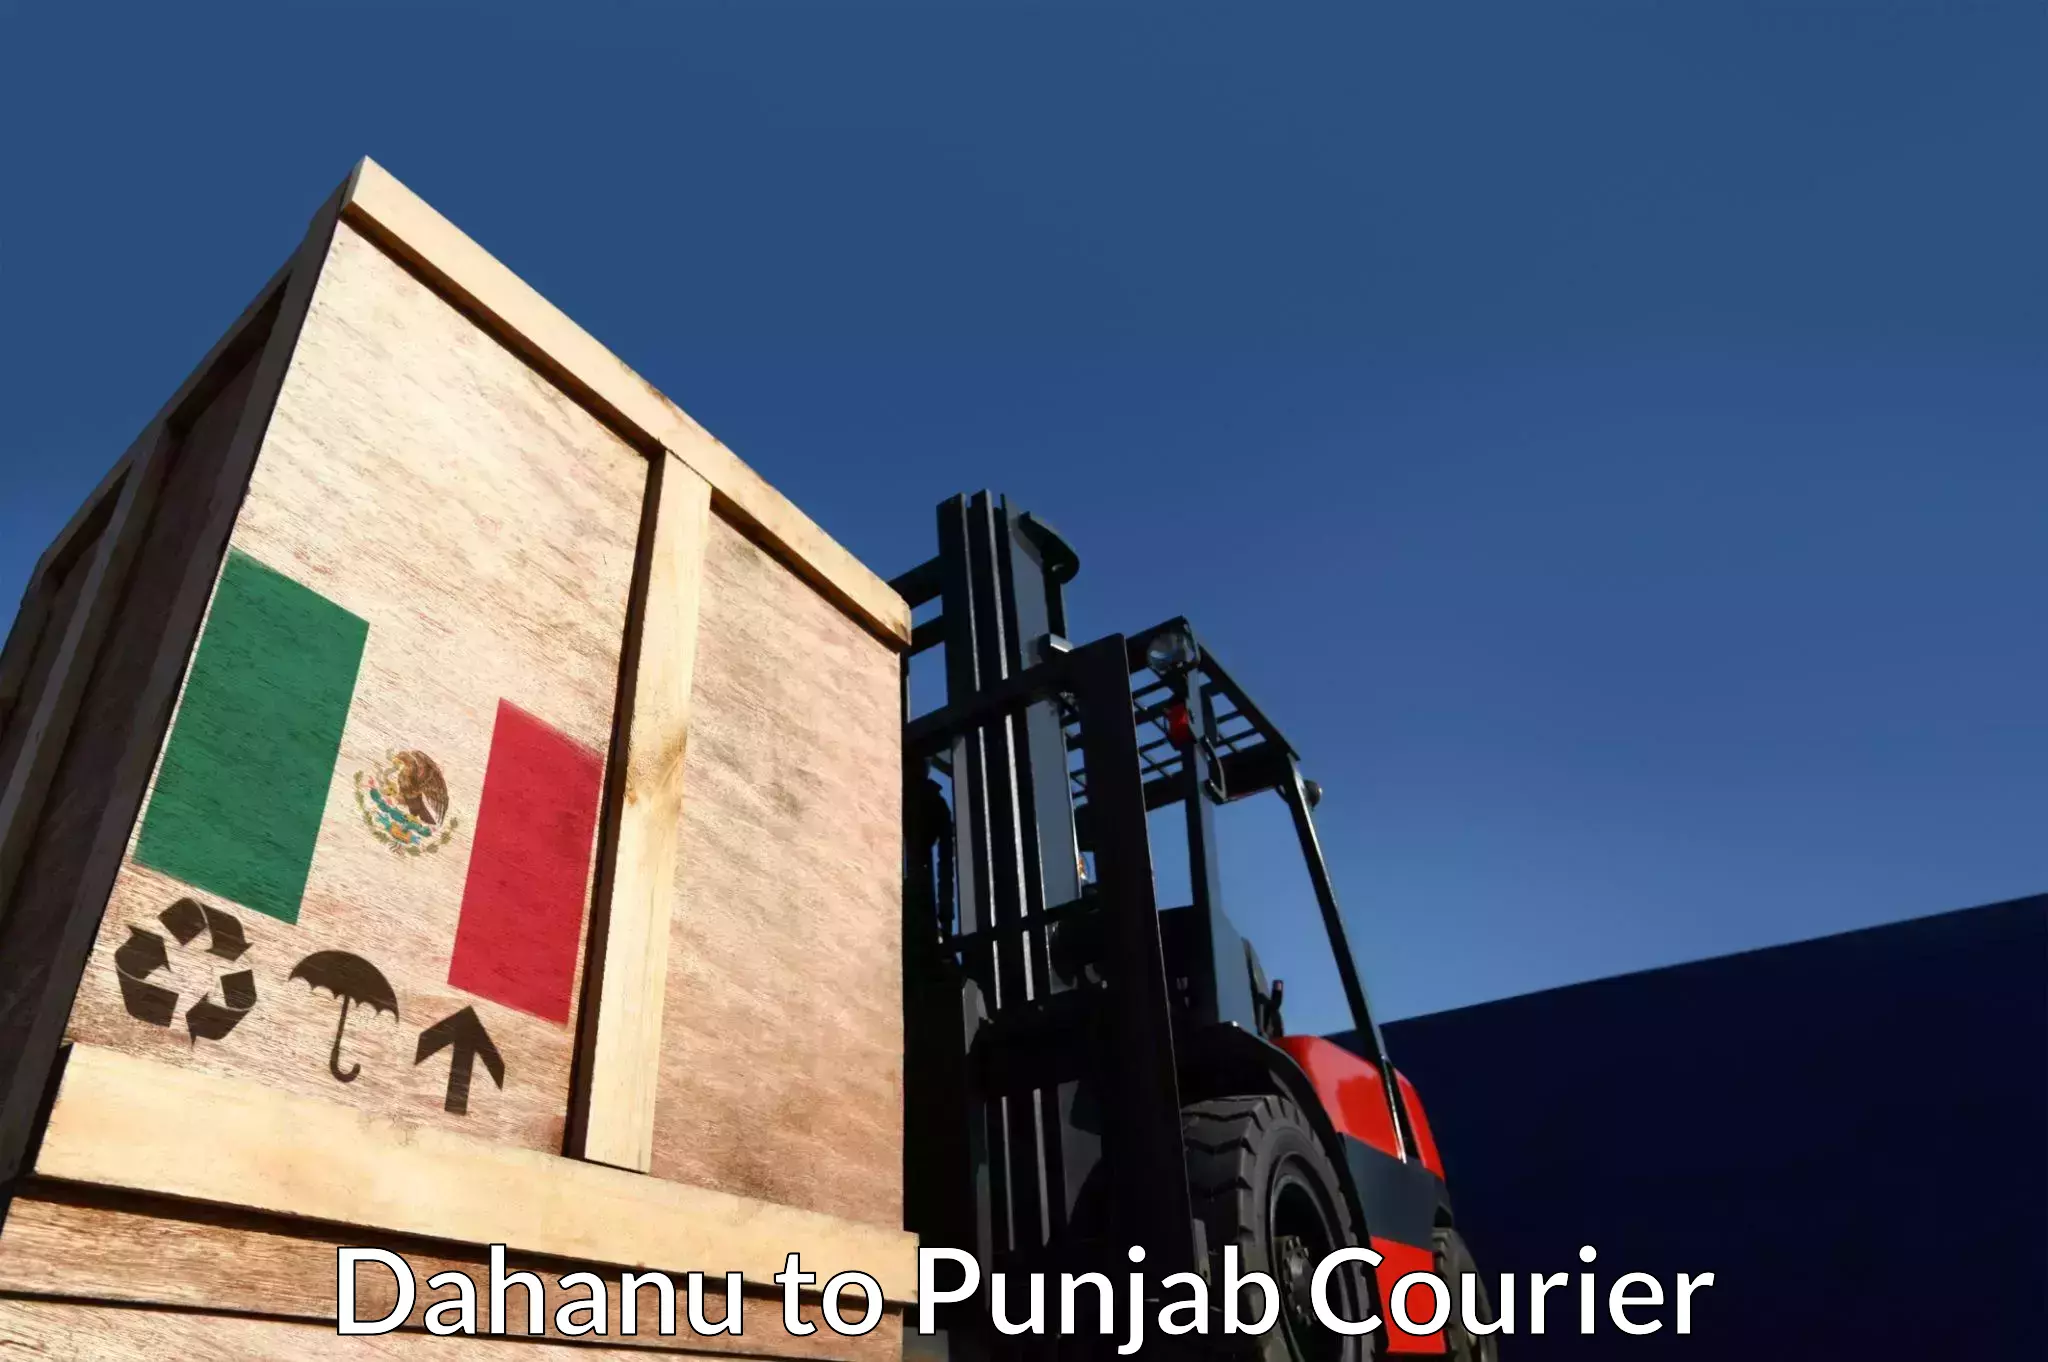 Multi-city courier Dahanu to Punjab